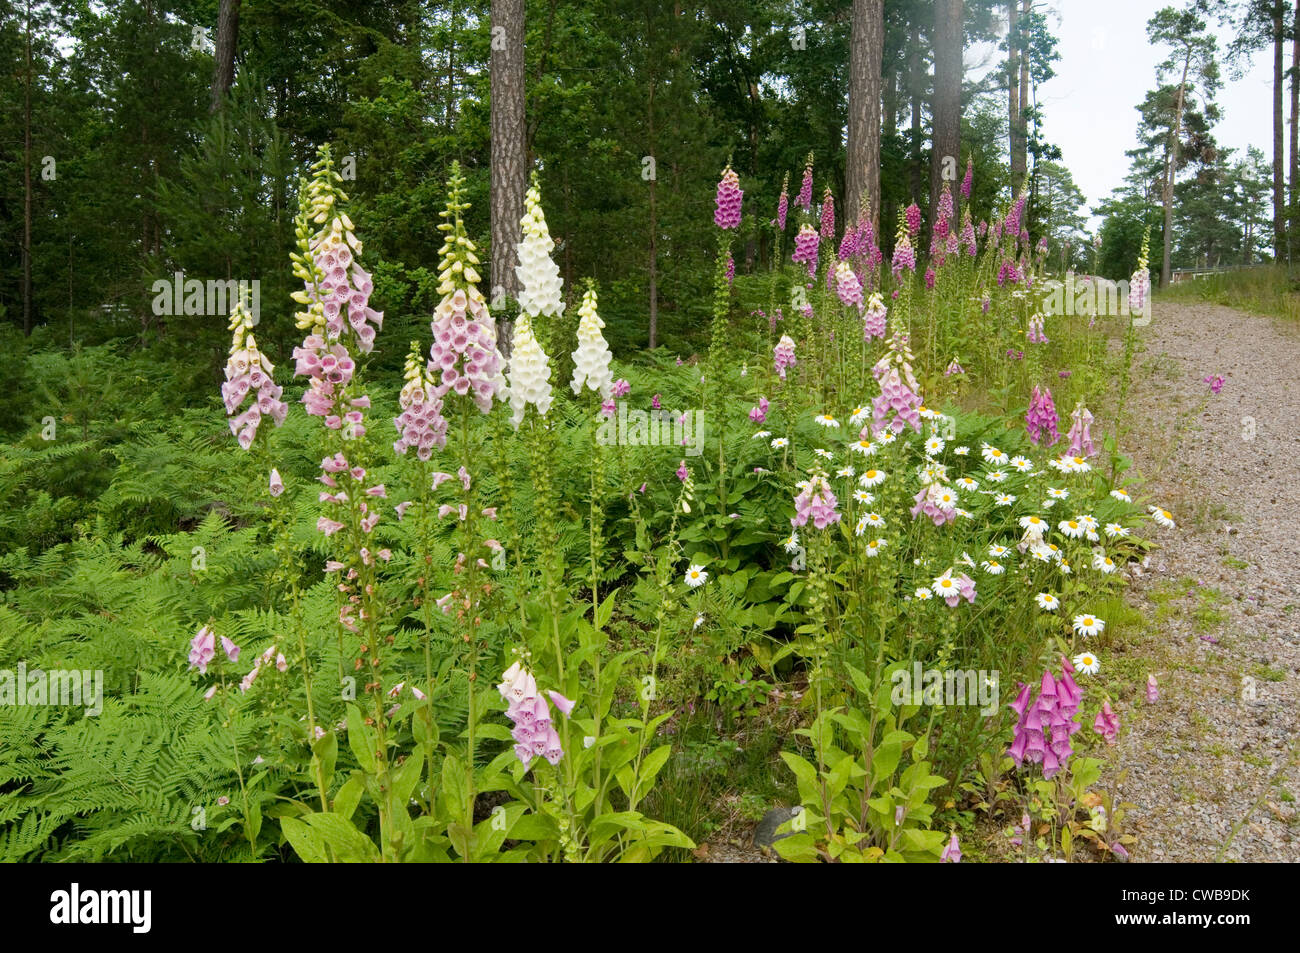 Foxglove digitales fleur sauvage des fleurs dans la forêt suédoise la Suède et de la flore sauvages forna Banque D'Images